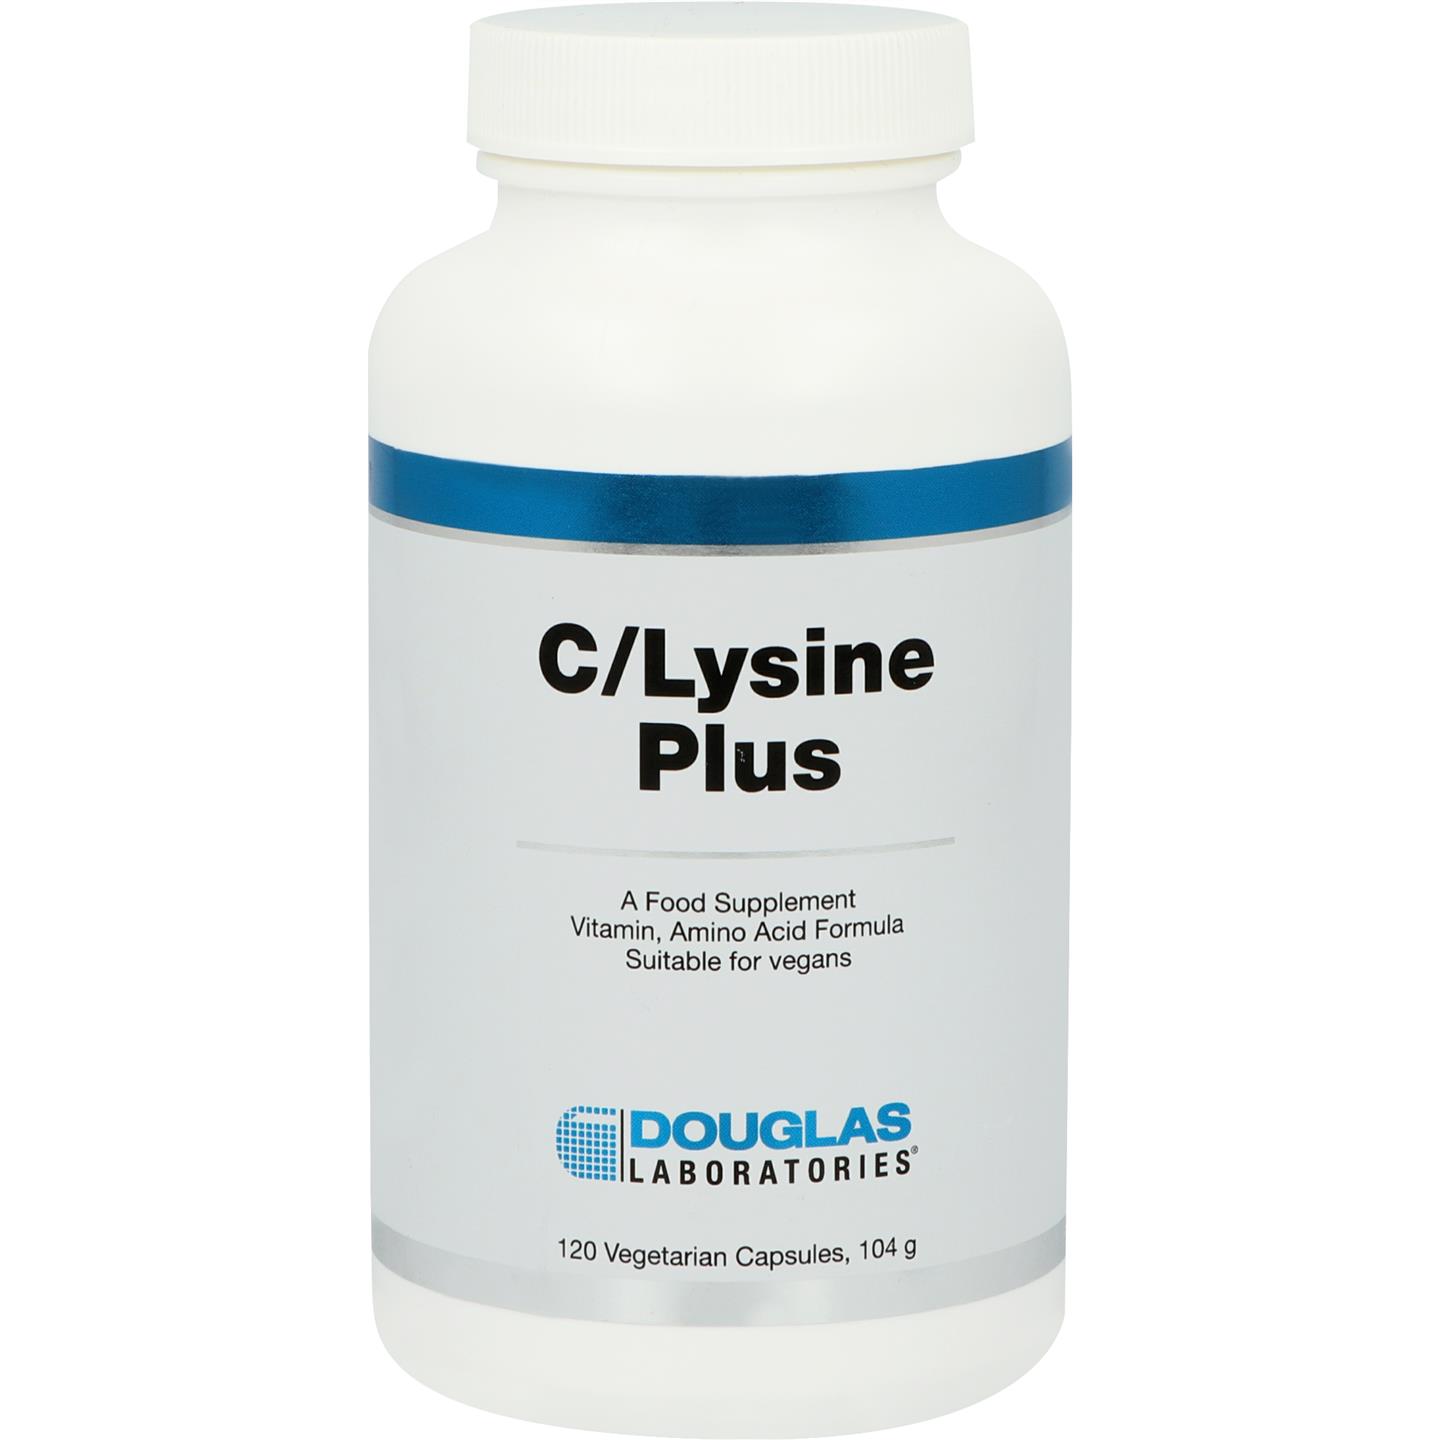 C/Lysine Plus